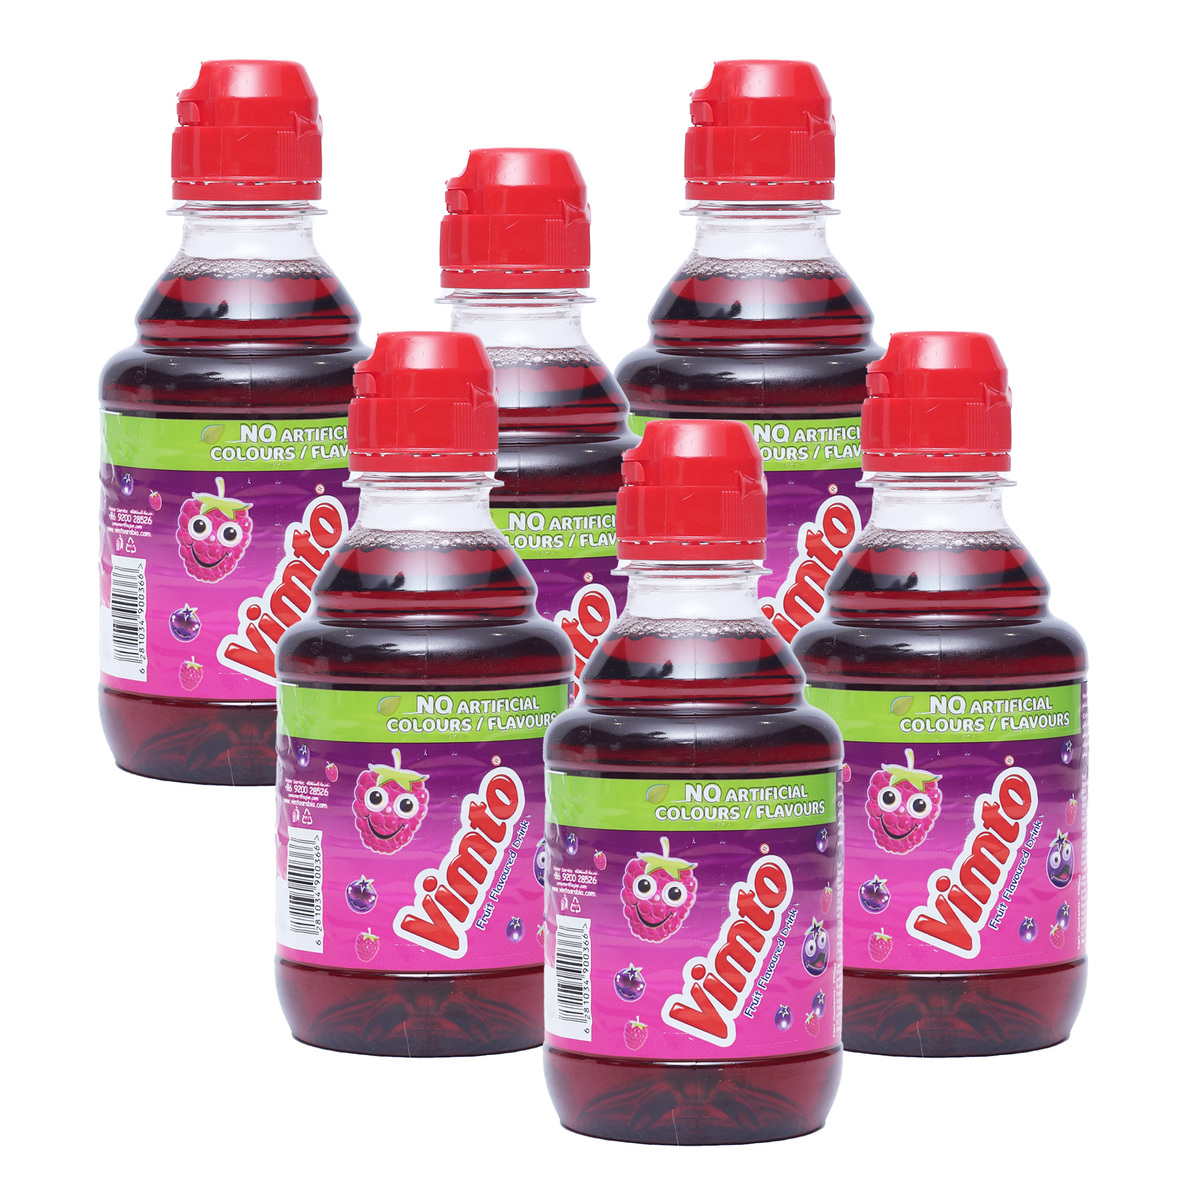 Vimto Fruit Flavoured Drink 12 x 250 ml